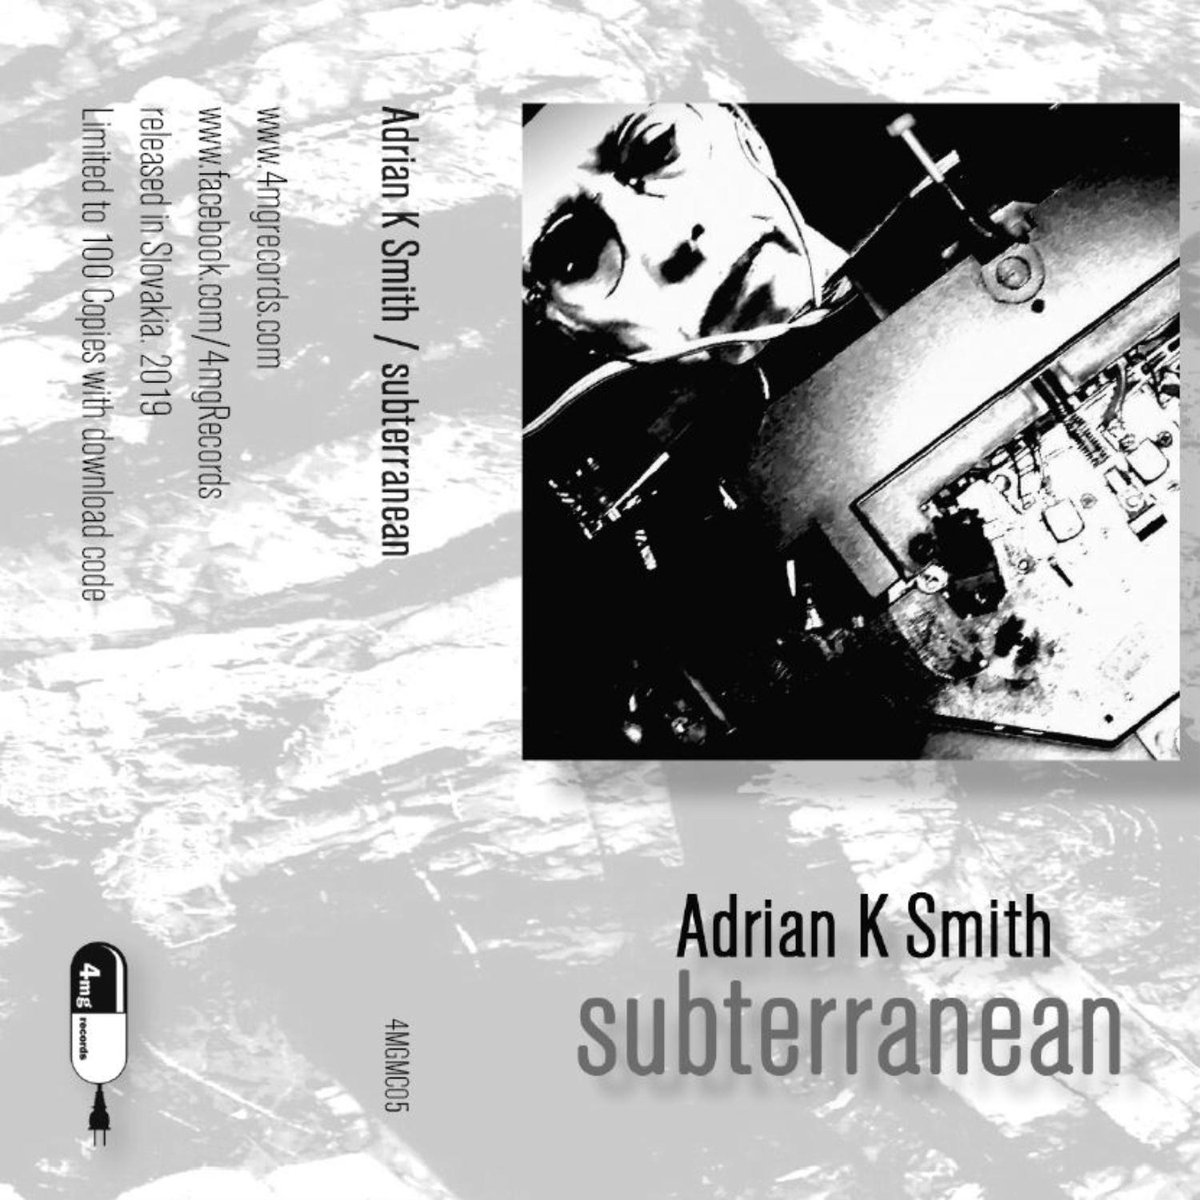 Adrian K Smith - Subterranean / Tape